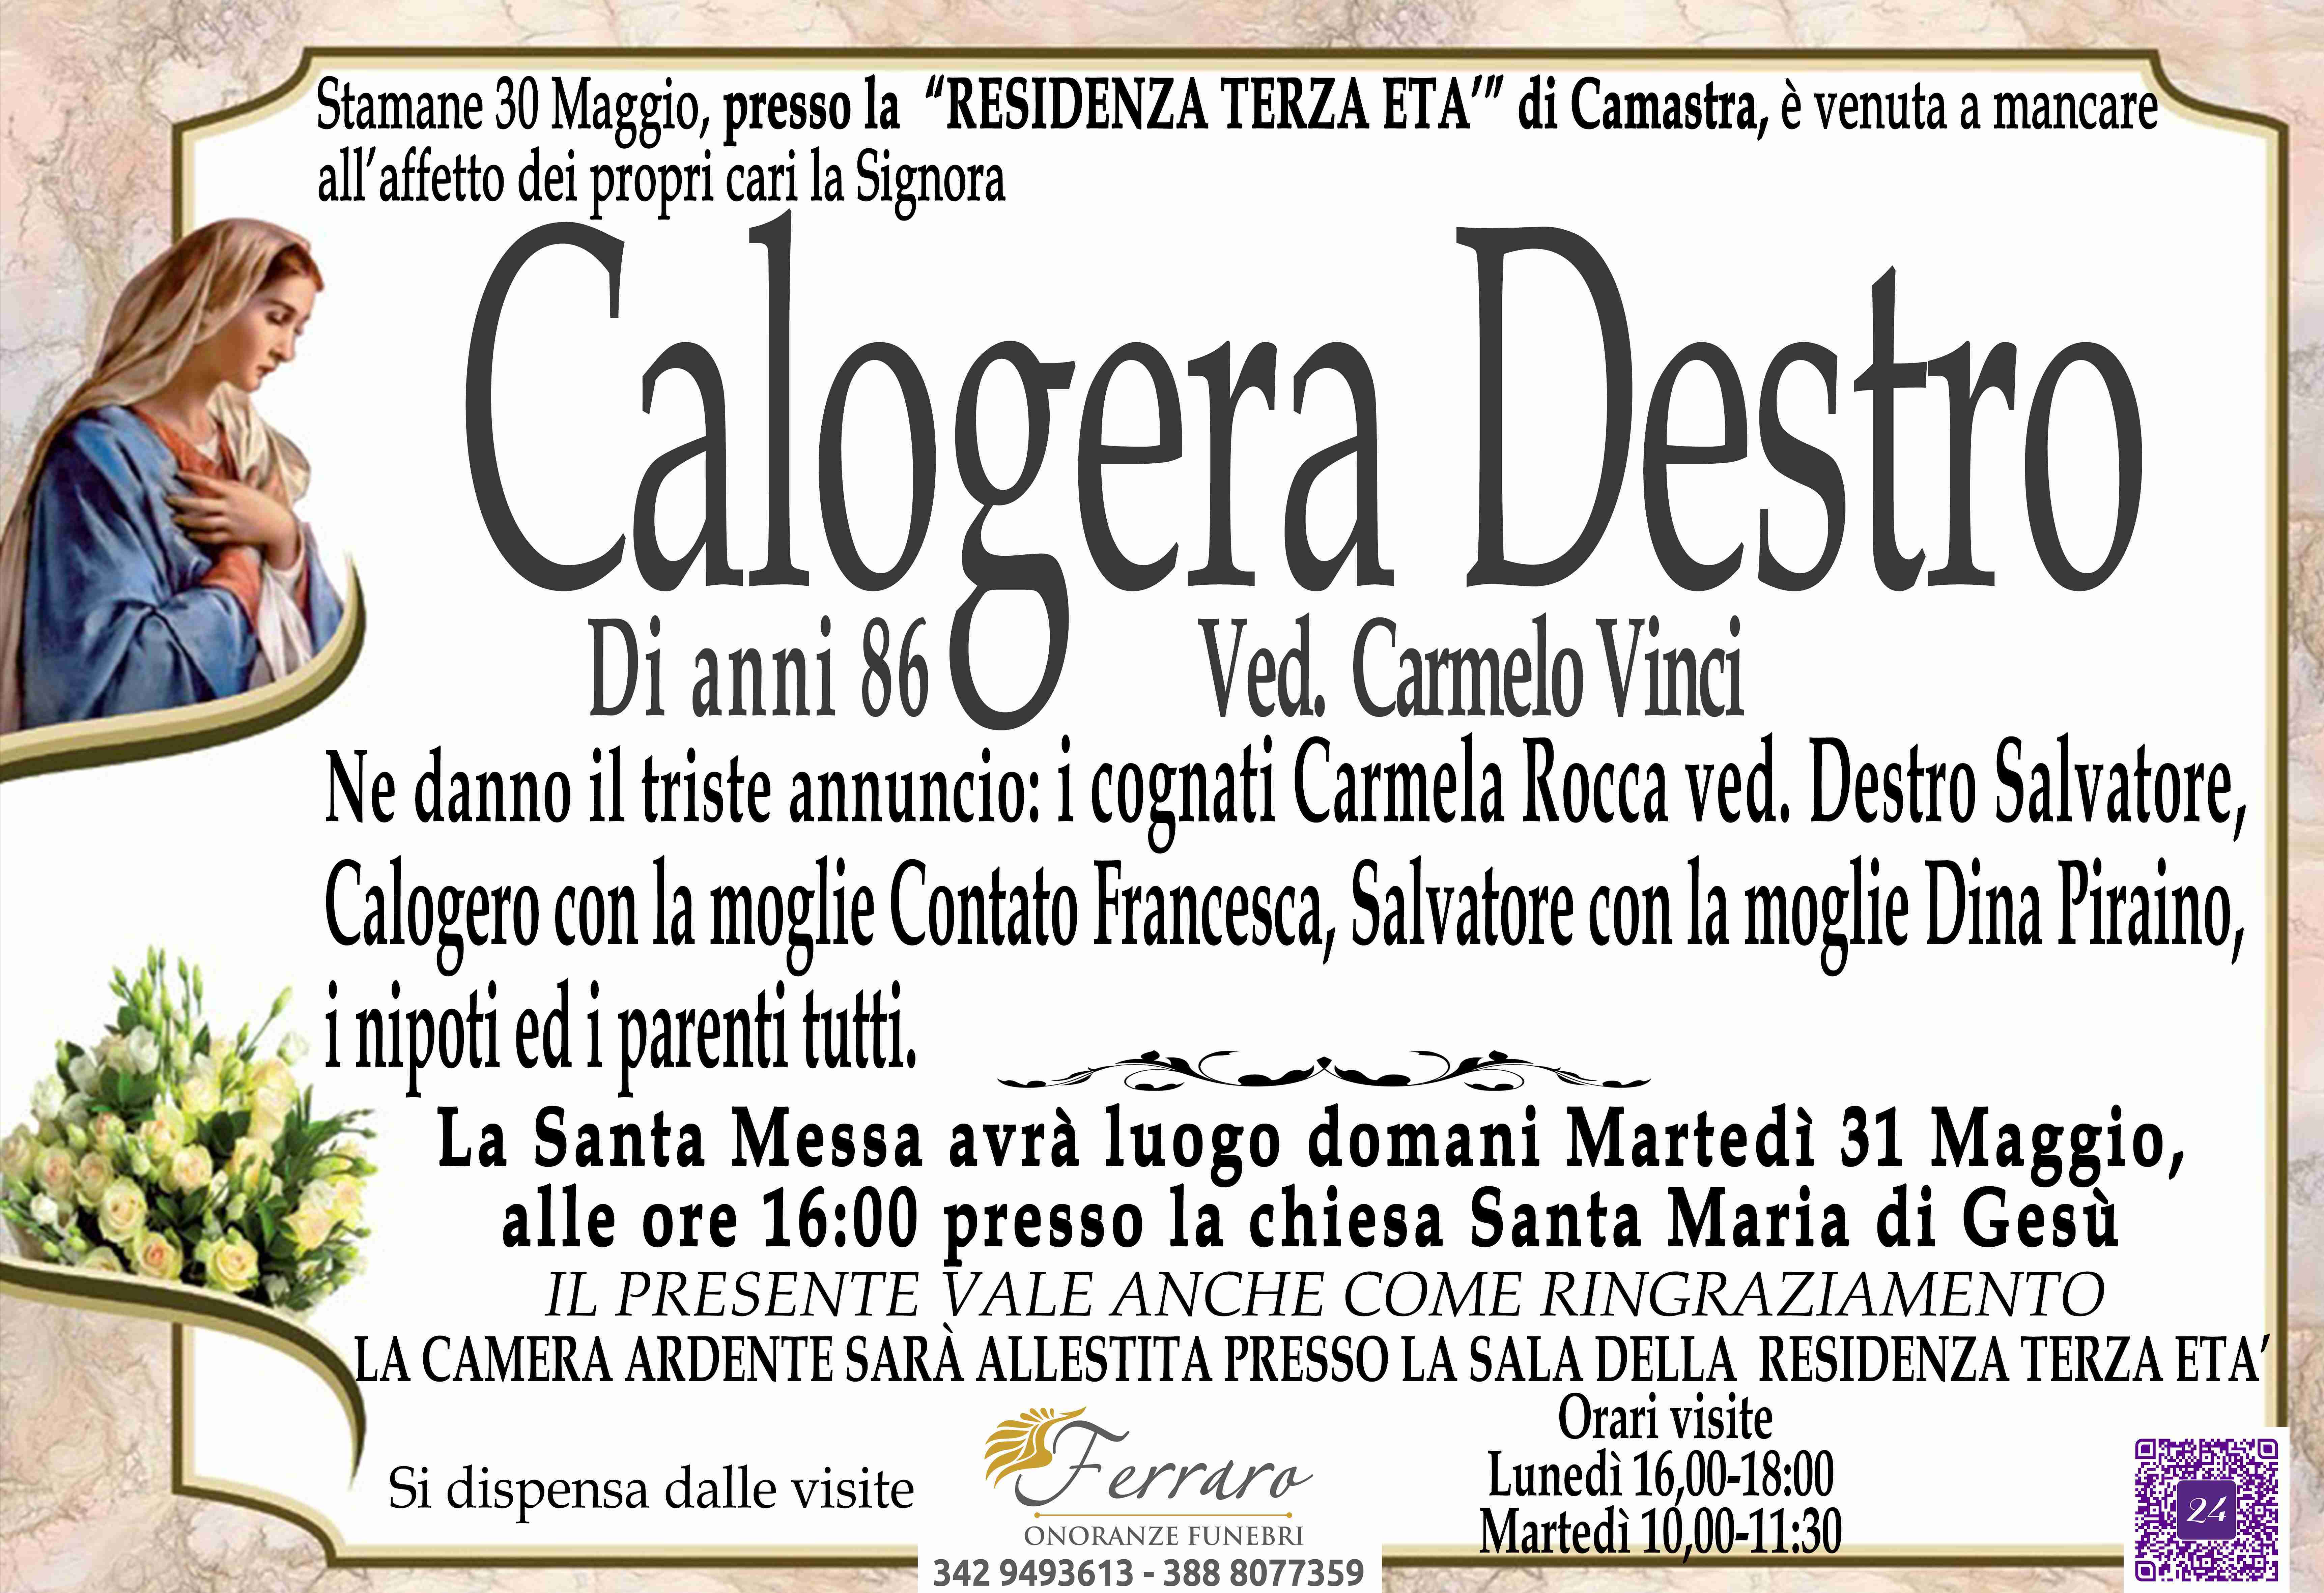 Calogera Destro